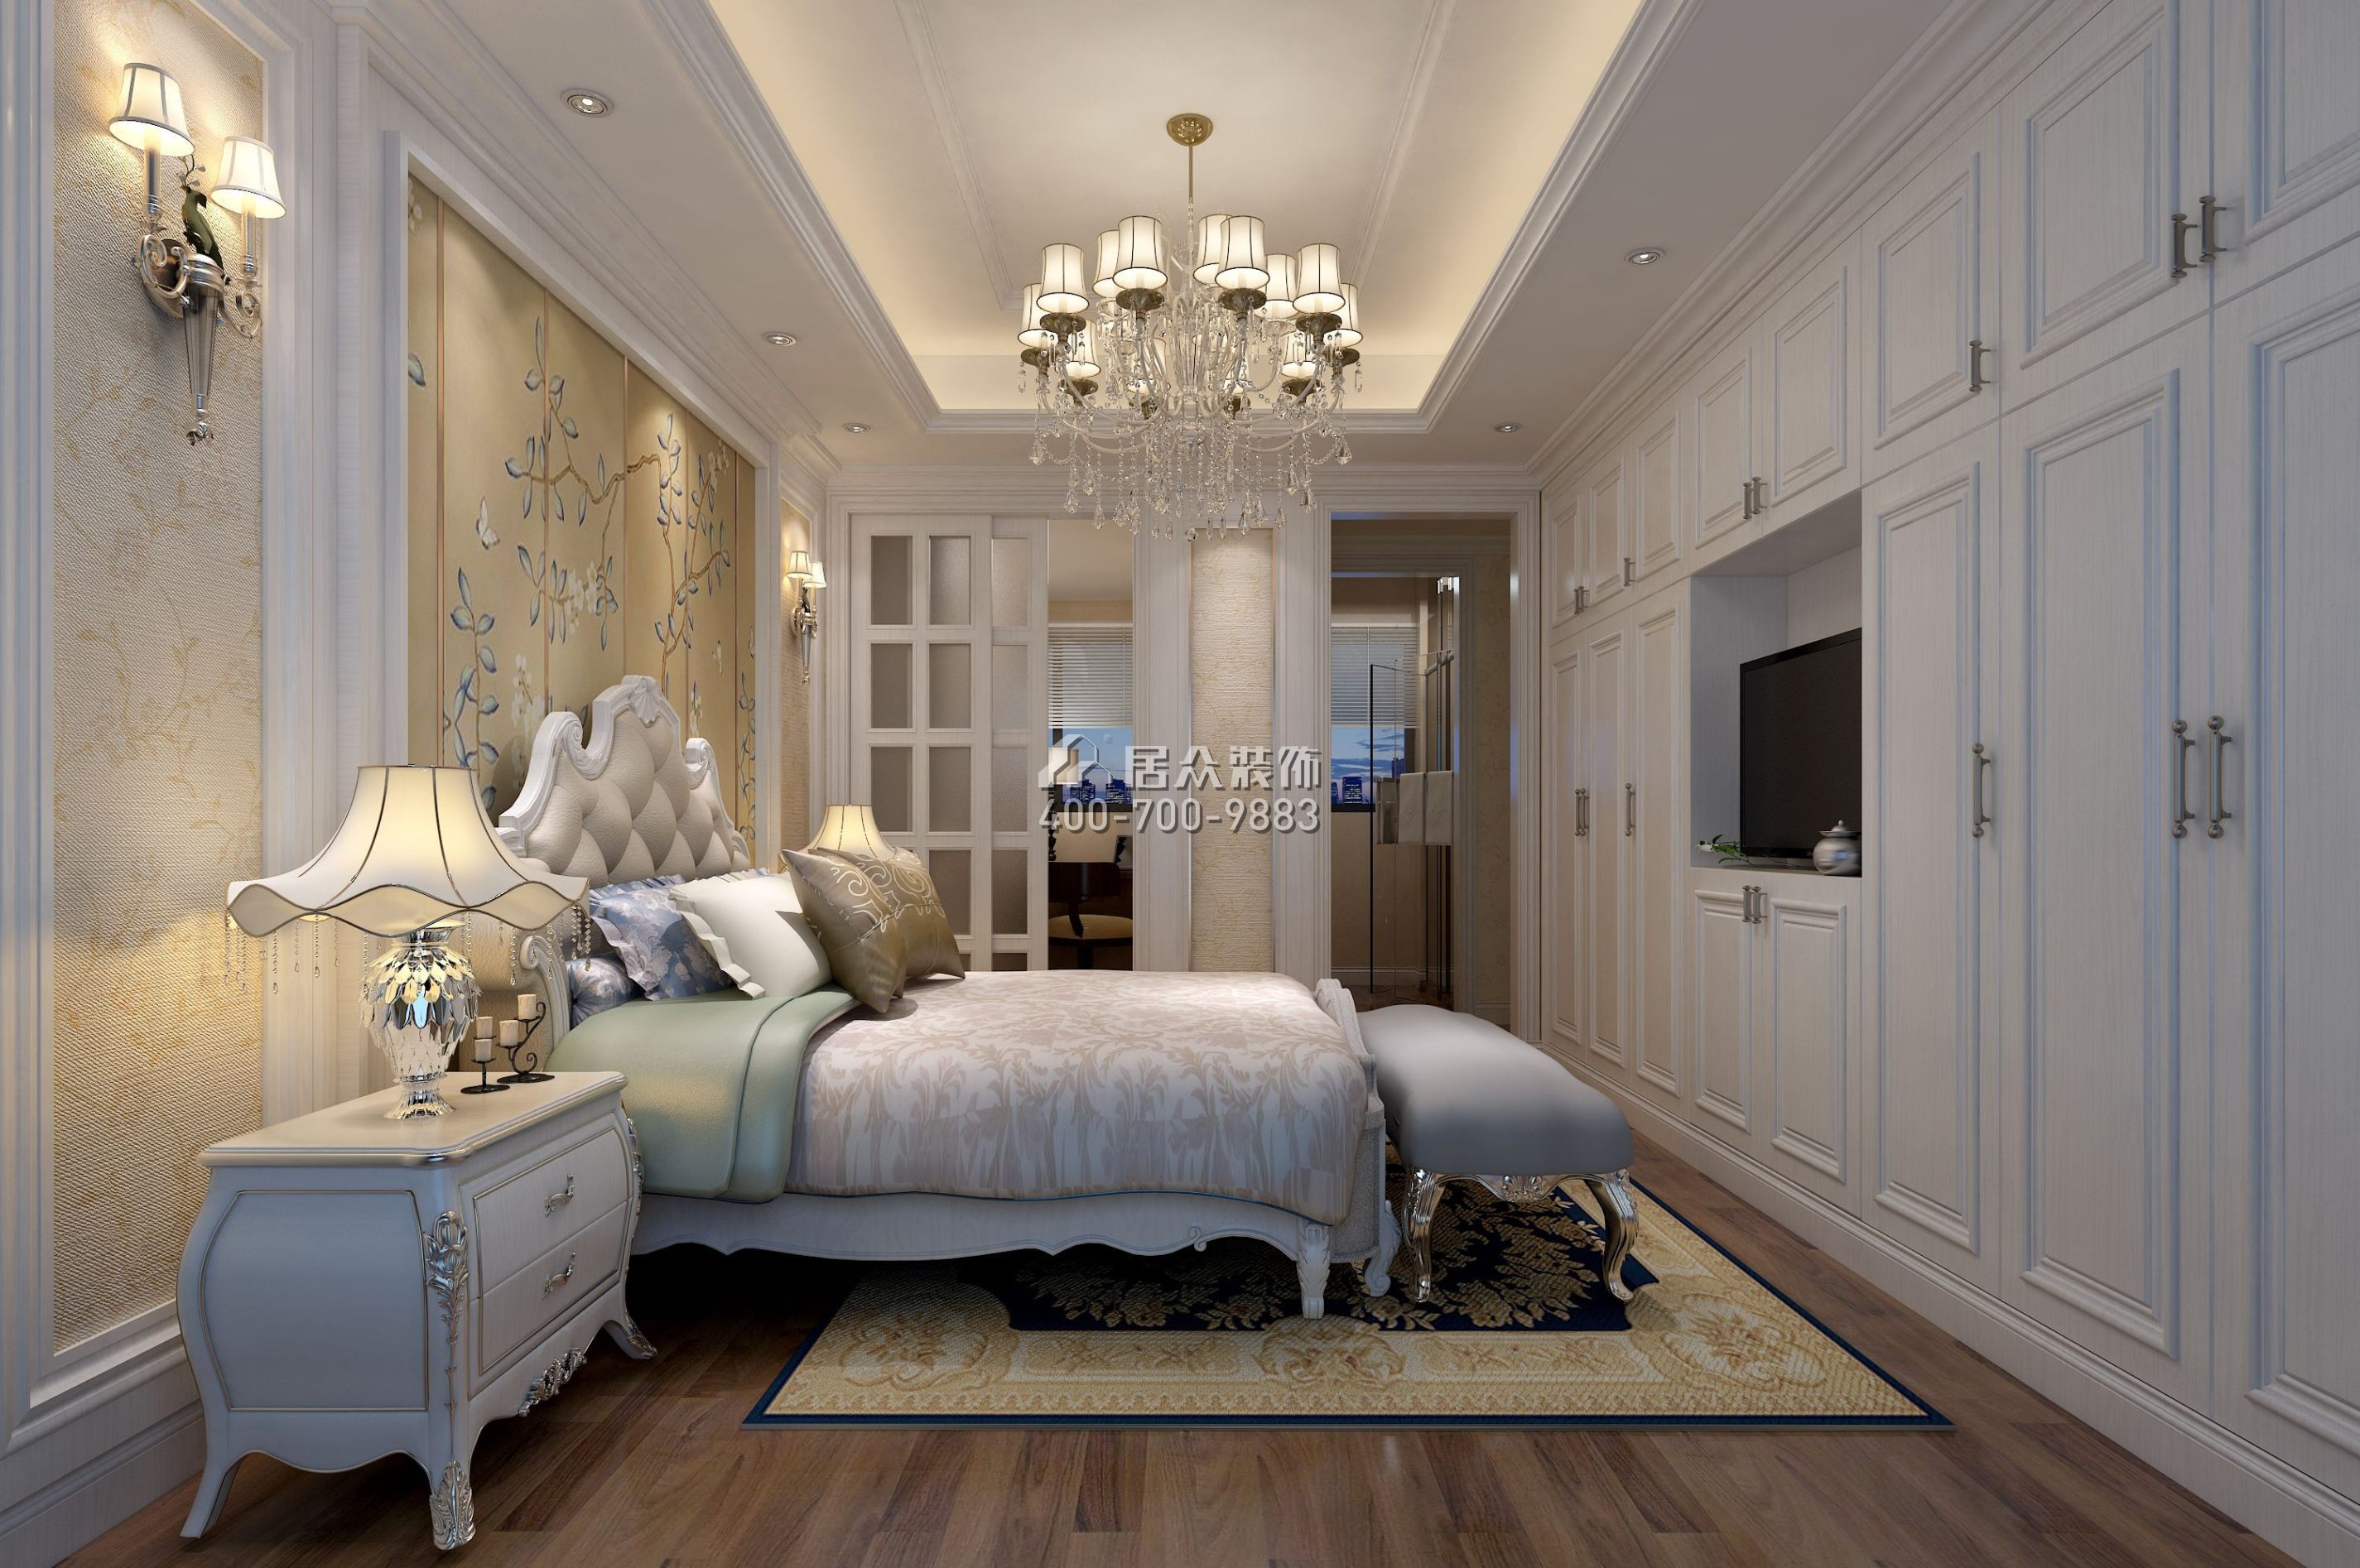 博林天瑞花园二期177平方米欧式风格平层户型卧室装修效果图